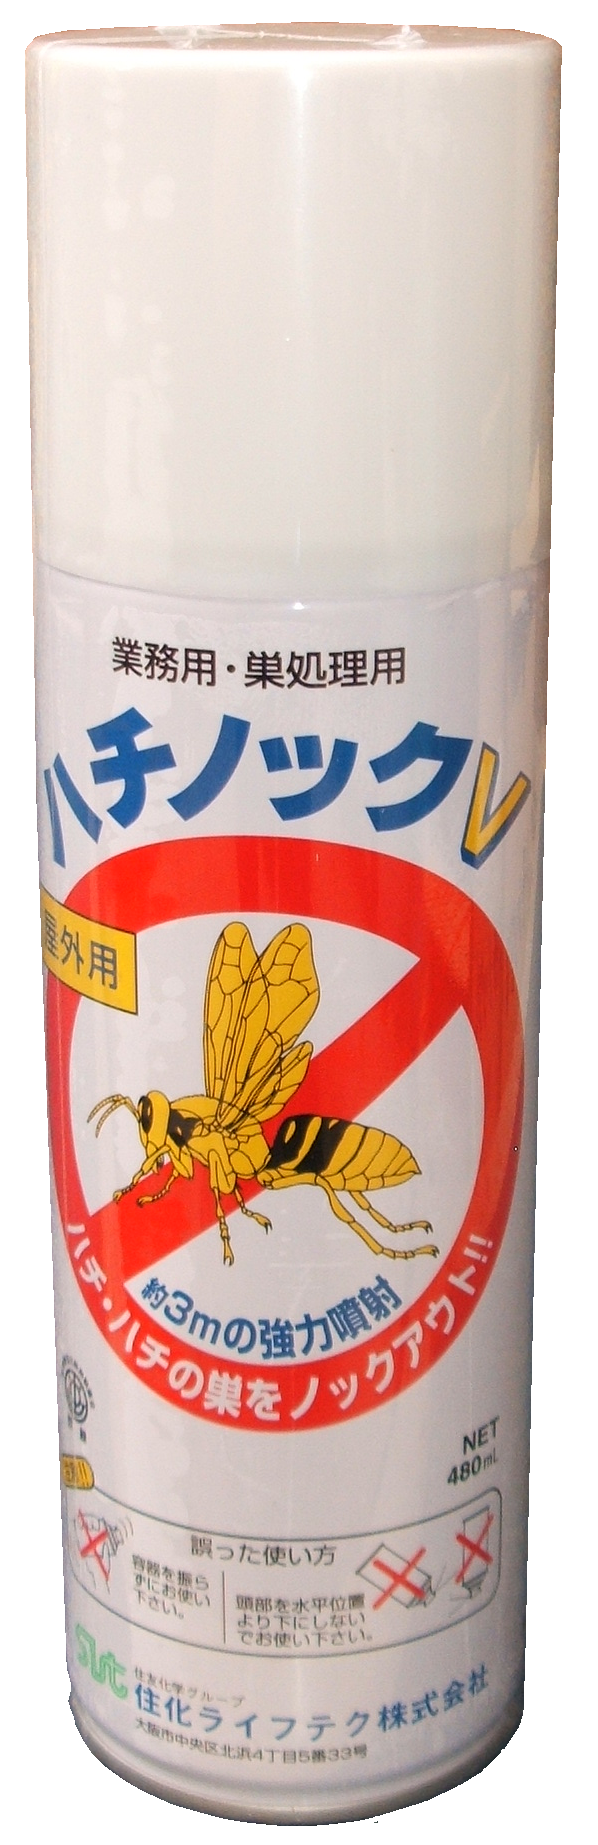 ハチの巣駆除用、蜂駆除用エアゾール・スプレー・ハチノックＶ｜蜂の巣駆除、蜂駆除｜・誰でも簡単に使用できるエアゾールタイプです。・直線状に最大約３ｍ飛ぶ強力噴射で離れた所から安全に巣を駆除出来ます。・薬剤は、ハチ類に対して著効のあるピレスロイド系を使用。・薬剤に触れたハチは即ノックダウンします。・人体に対して安全性の高いピレスロイドを配合安心して使えます。製品名：ハチノックＶ、内容量：４８０ｍｌ、噴霧角度：狭角（棒状噴霧）、成分：LPG使用、窒素ガス使用、ｄｄ－Ｔ８０プラレトリン（ピレスロイド系薬剤）、対象害虫：アシナガバチ、スズメバチなど、使用方法：対象害虫や巣に向かって直接噴霧して下さい。、販売元：住化ライフテク株式会社｜ハチの巣駆除用、蜂駆除用エアゾール・スプレー・ハチノックＶ｜蜂の巣駆除、蜂駆除